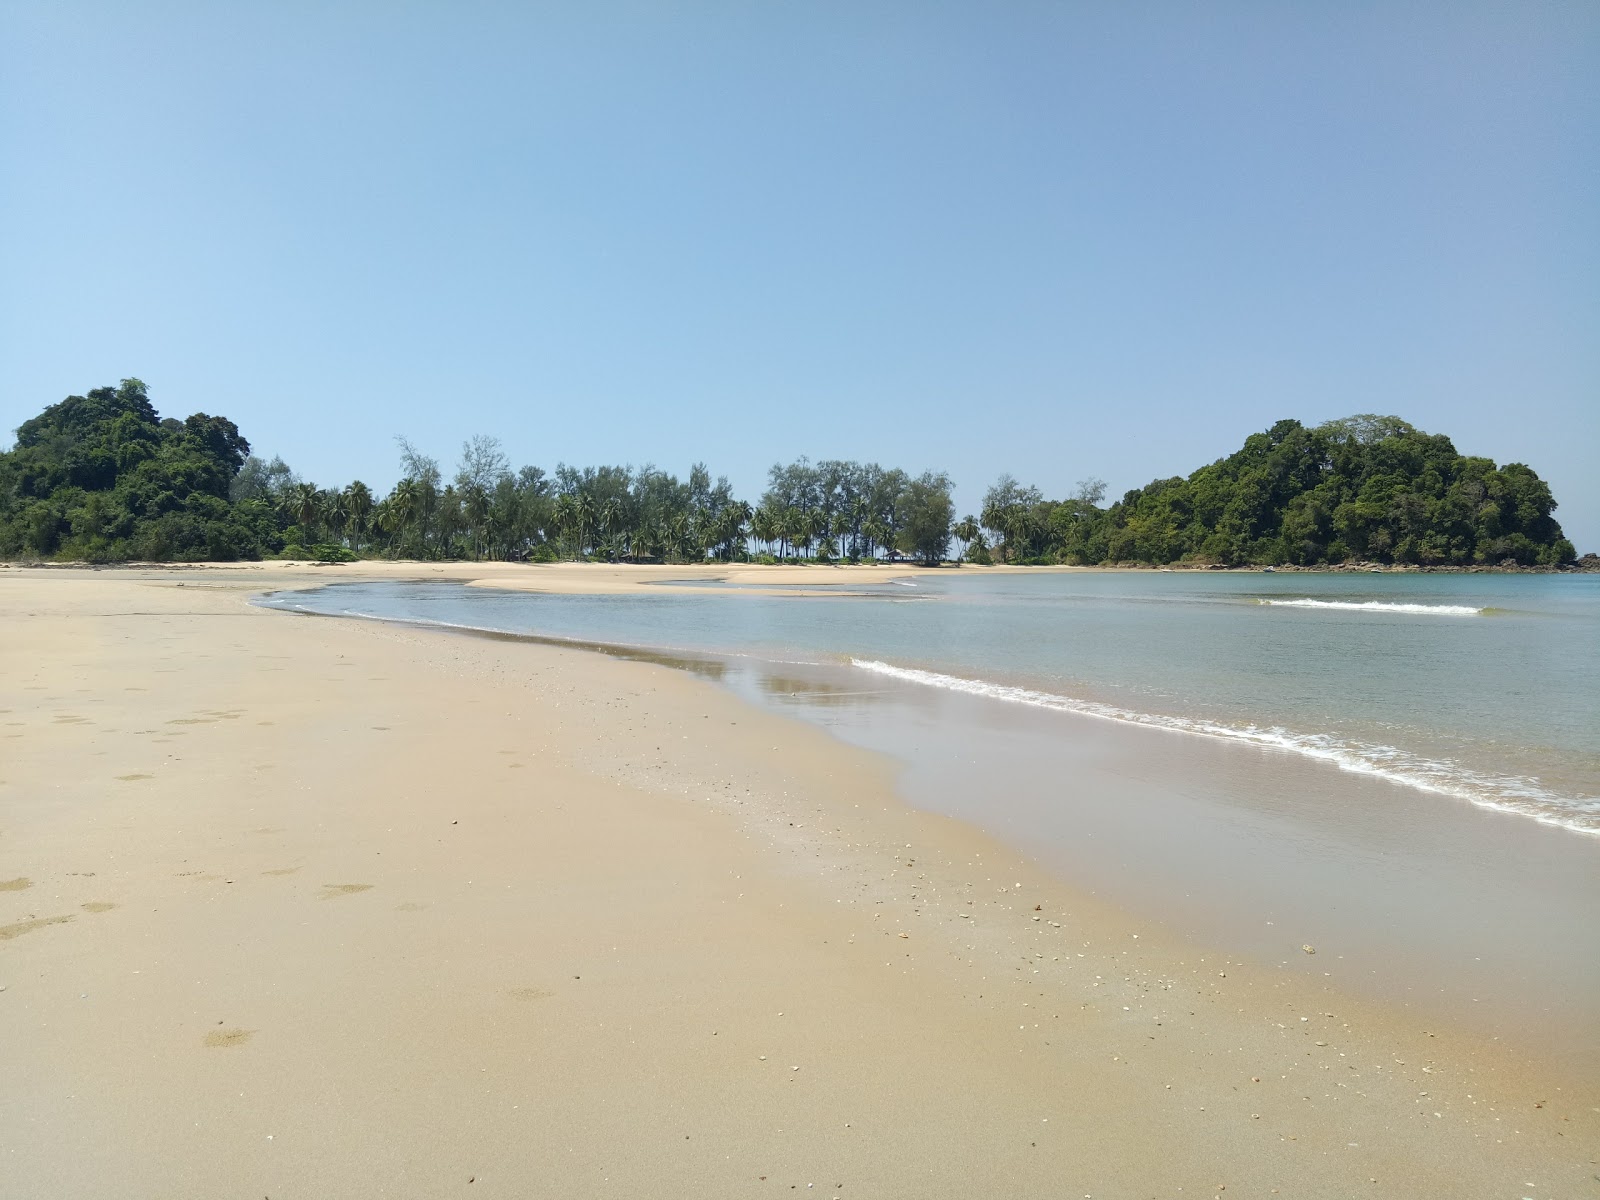 Zdjęcie Phrathong Beach położony w naturalnym obszarze